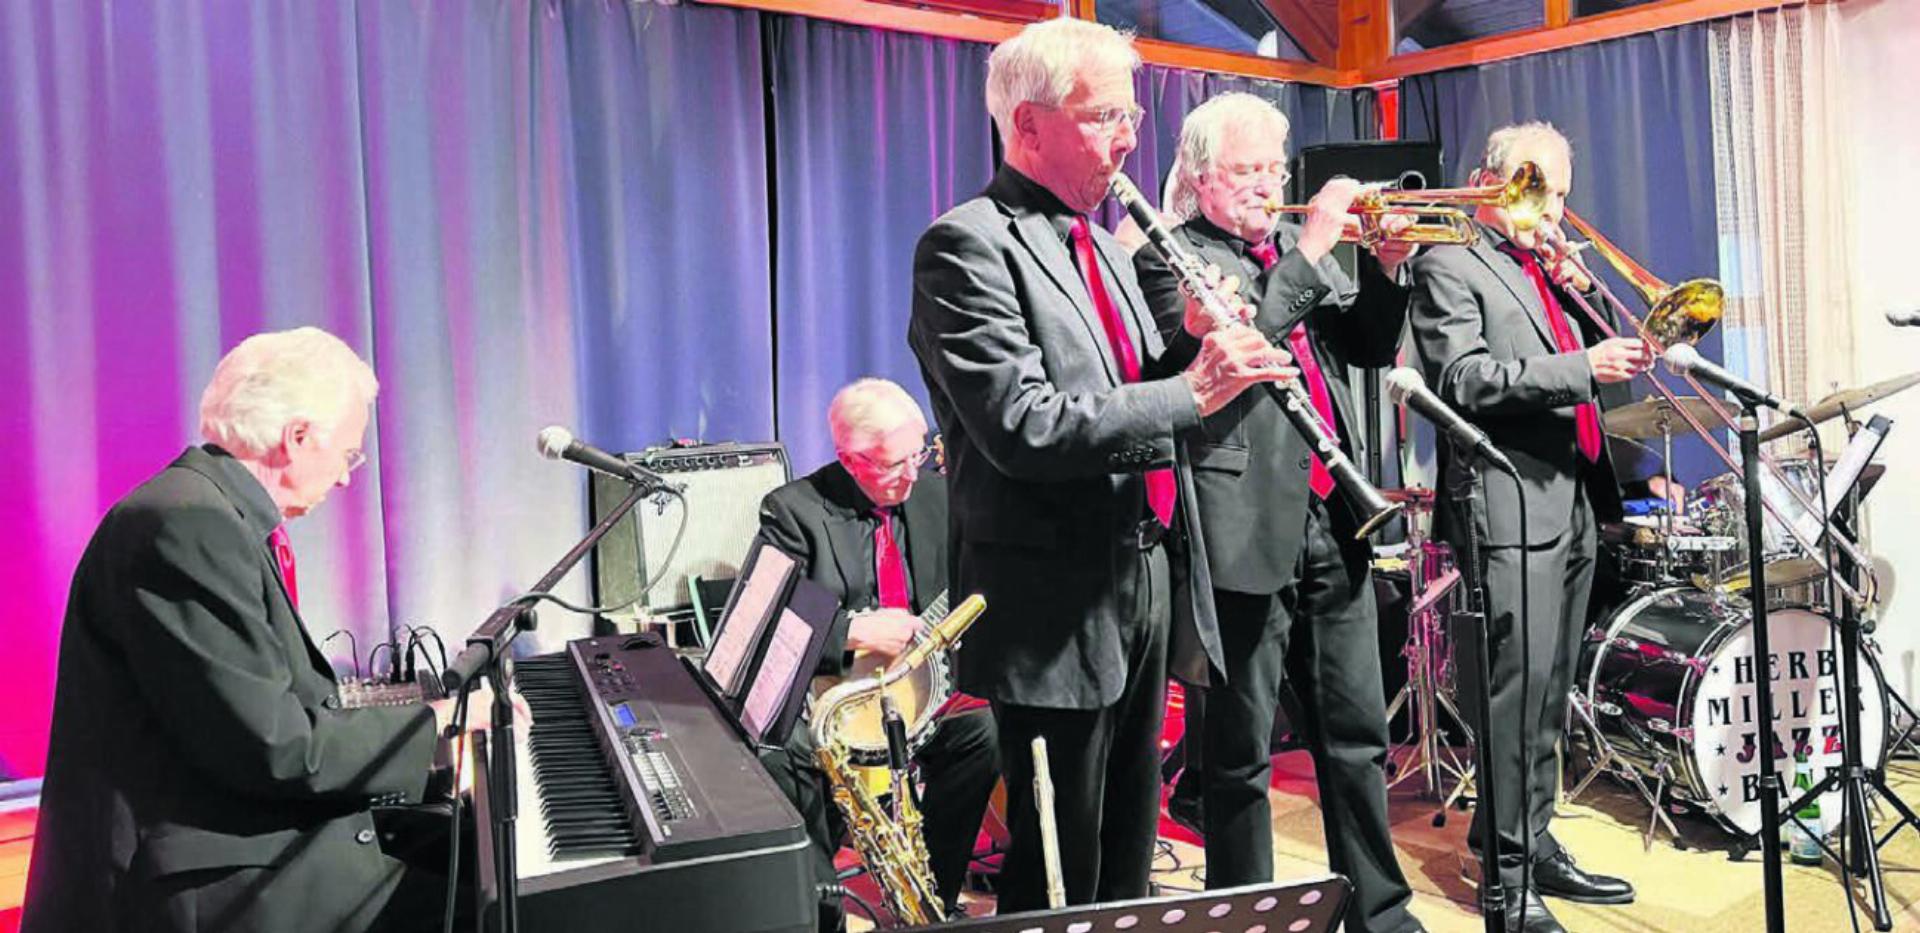 In alter Frische – die Herb Miller Jazz Band begeistert ihr Publikum auch nach 50 Jahren noch immer. Heute fast noch mehr als damals. Bild: Walter Minder